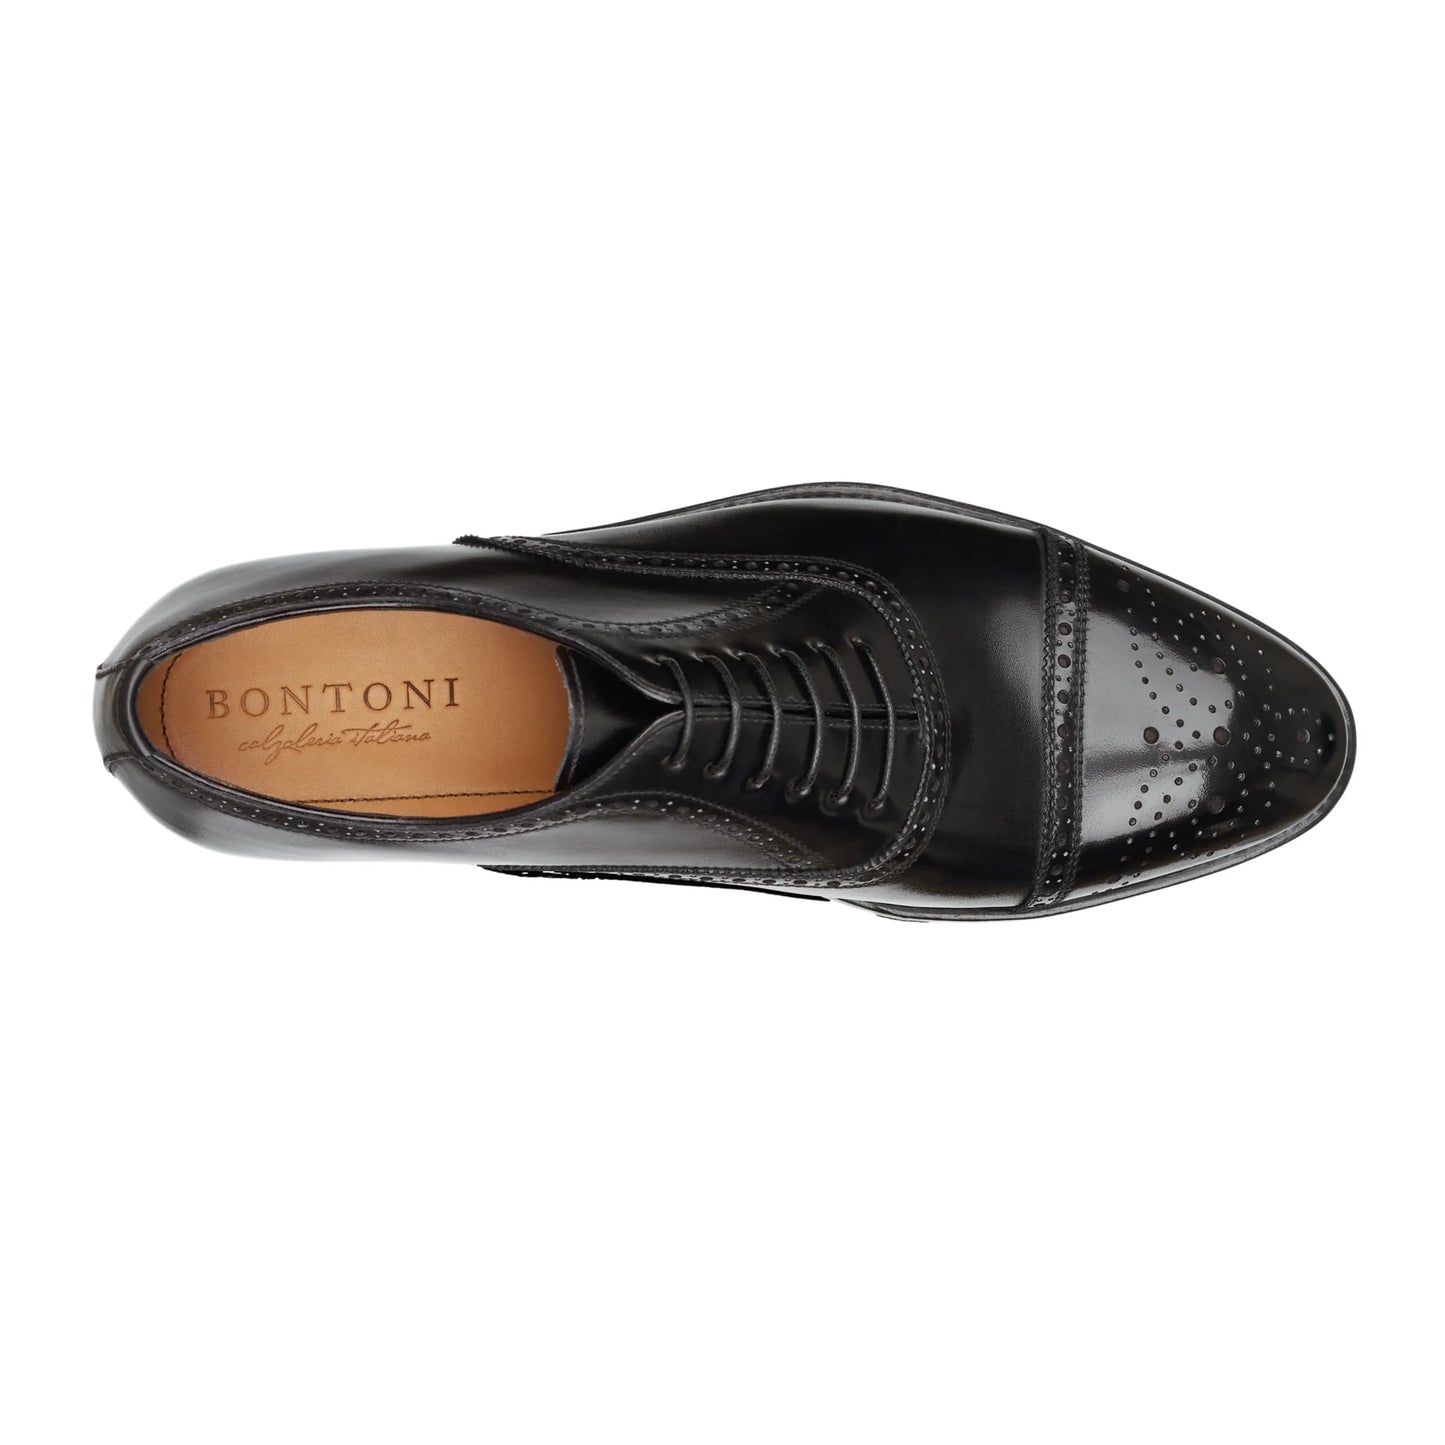 „Bellantonio“ Oxford-Schuhe aus Leder mit sechs Ösen, perforierten Details und Medaillon in Nero Black 